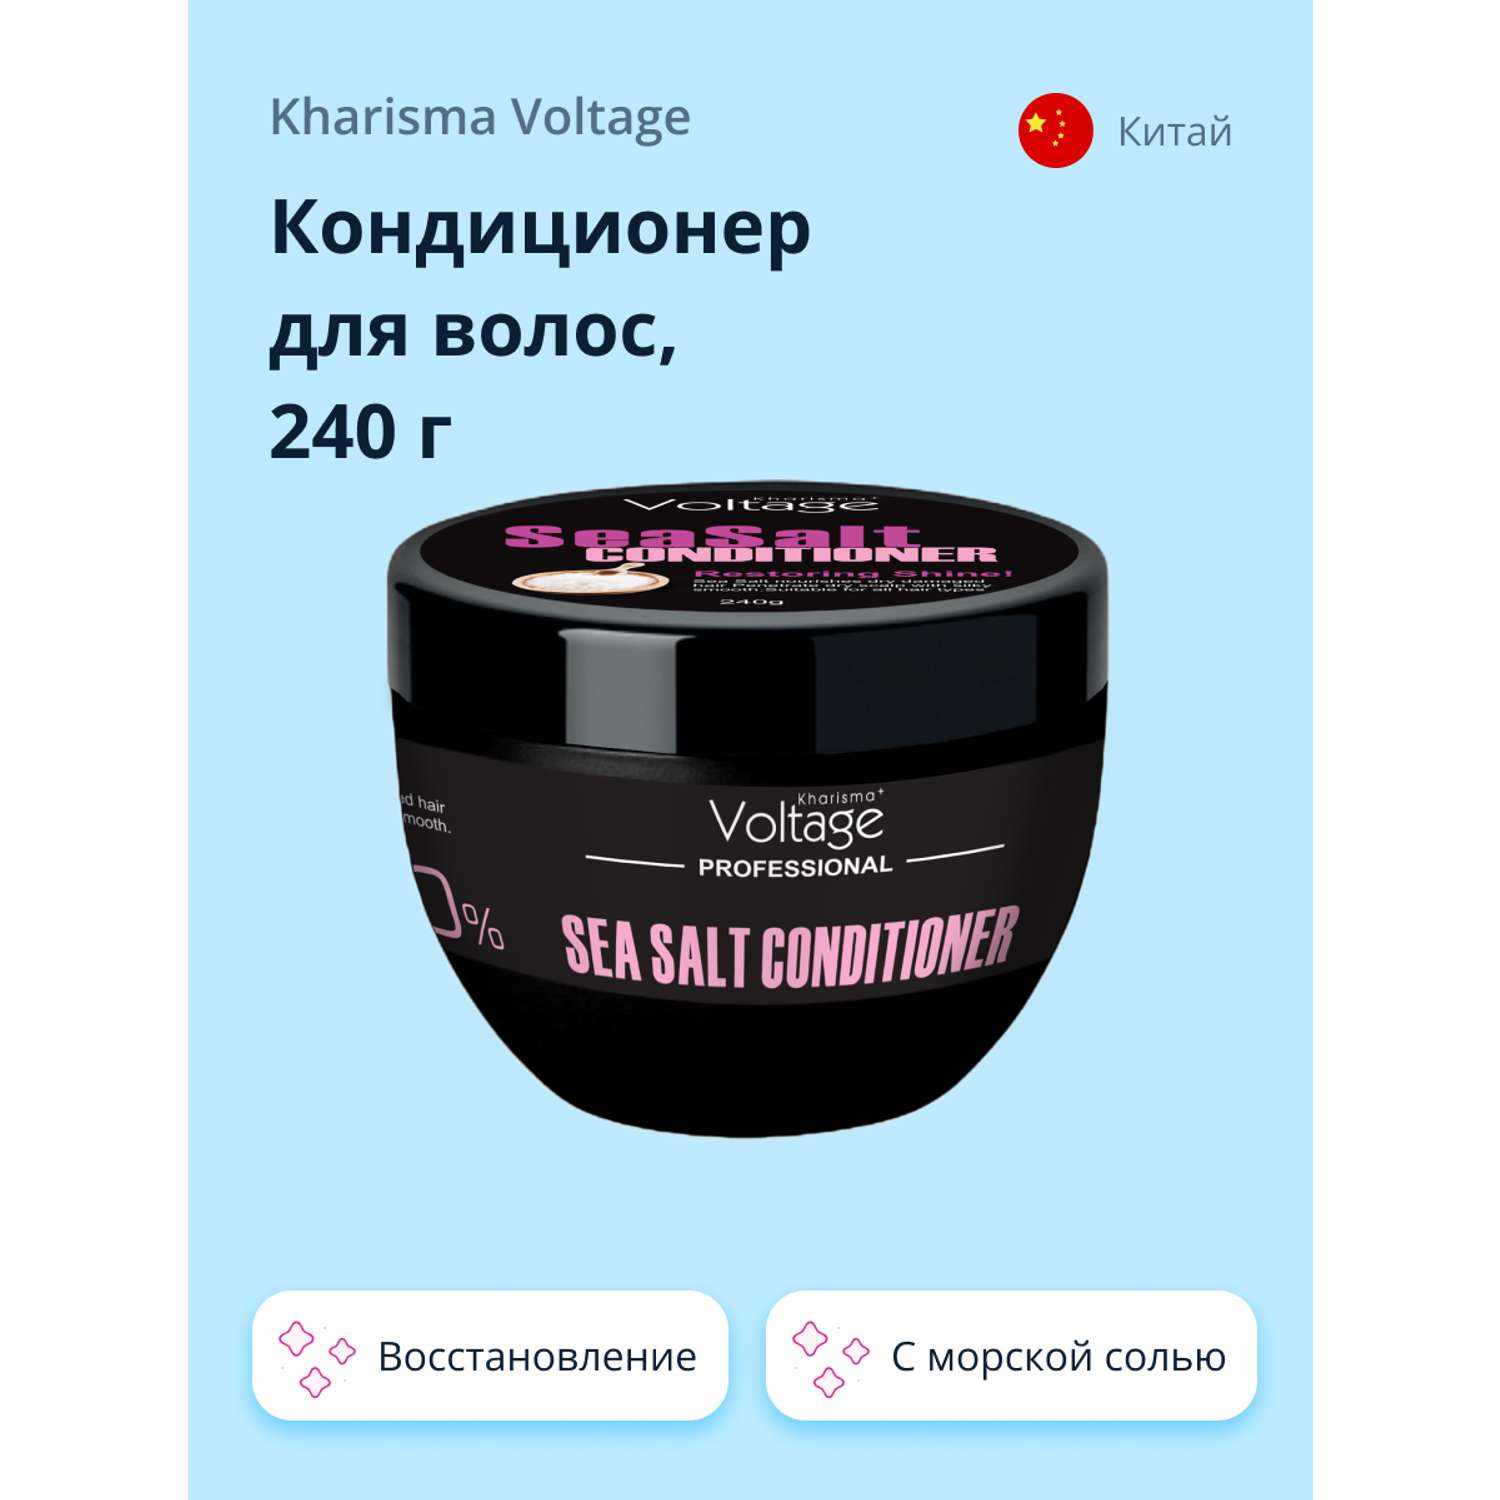 Кондиционер для волос Kharisma Voltage Professional sea salt 240 г - фото 1